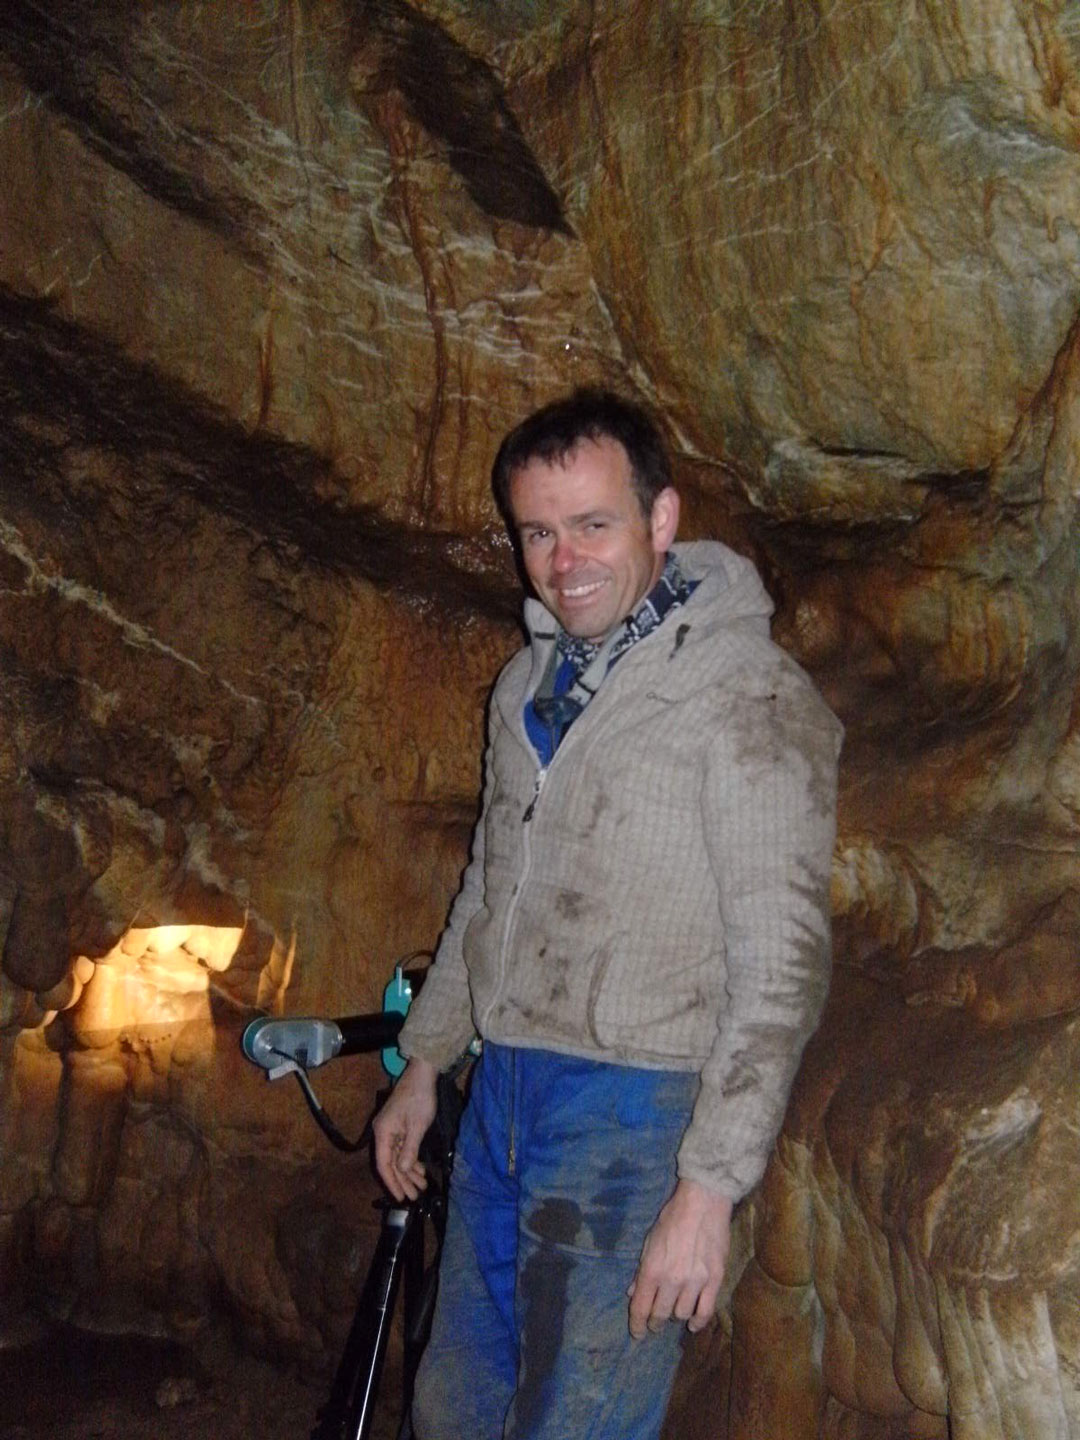 Andreas Pastoors hat sich als Archäologe auf die frühen Kulturzeugnisse der Menschen spezialisiert und erforscht eiszeitliche Höhlen. (Foto: Andreas Pastoors)